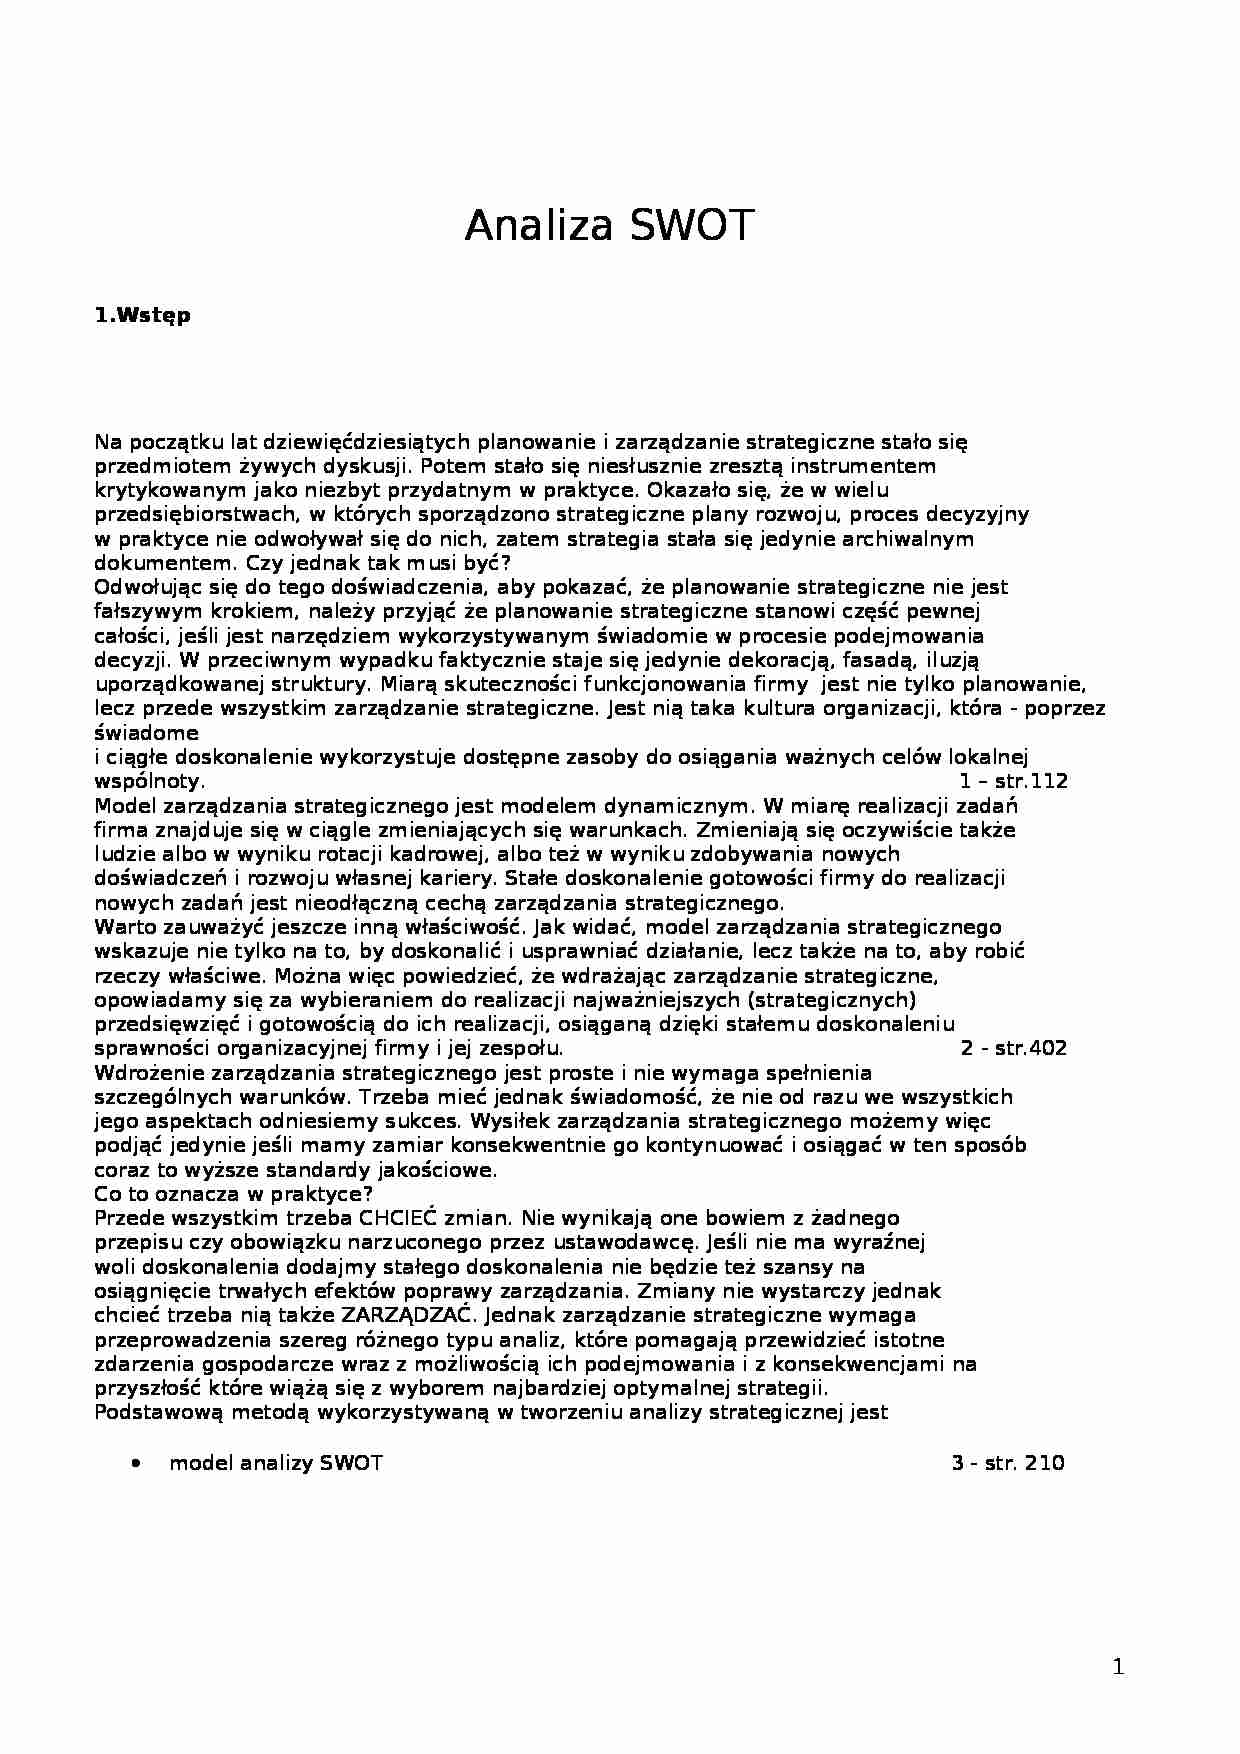 Analiza SWOT - szczegółowe opracowanie - strona 1